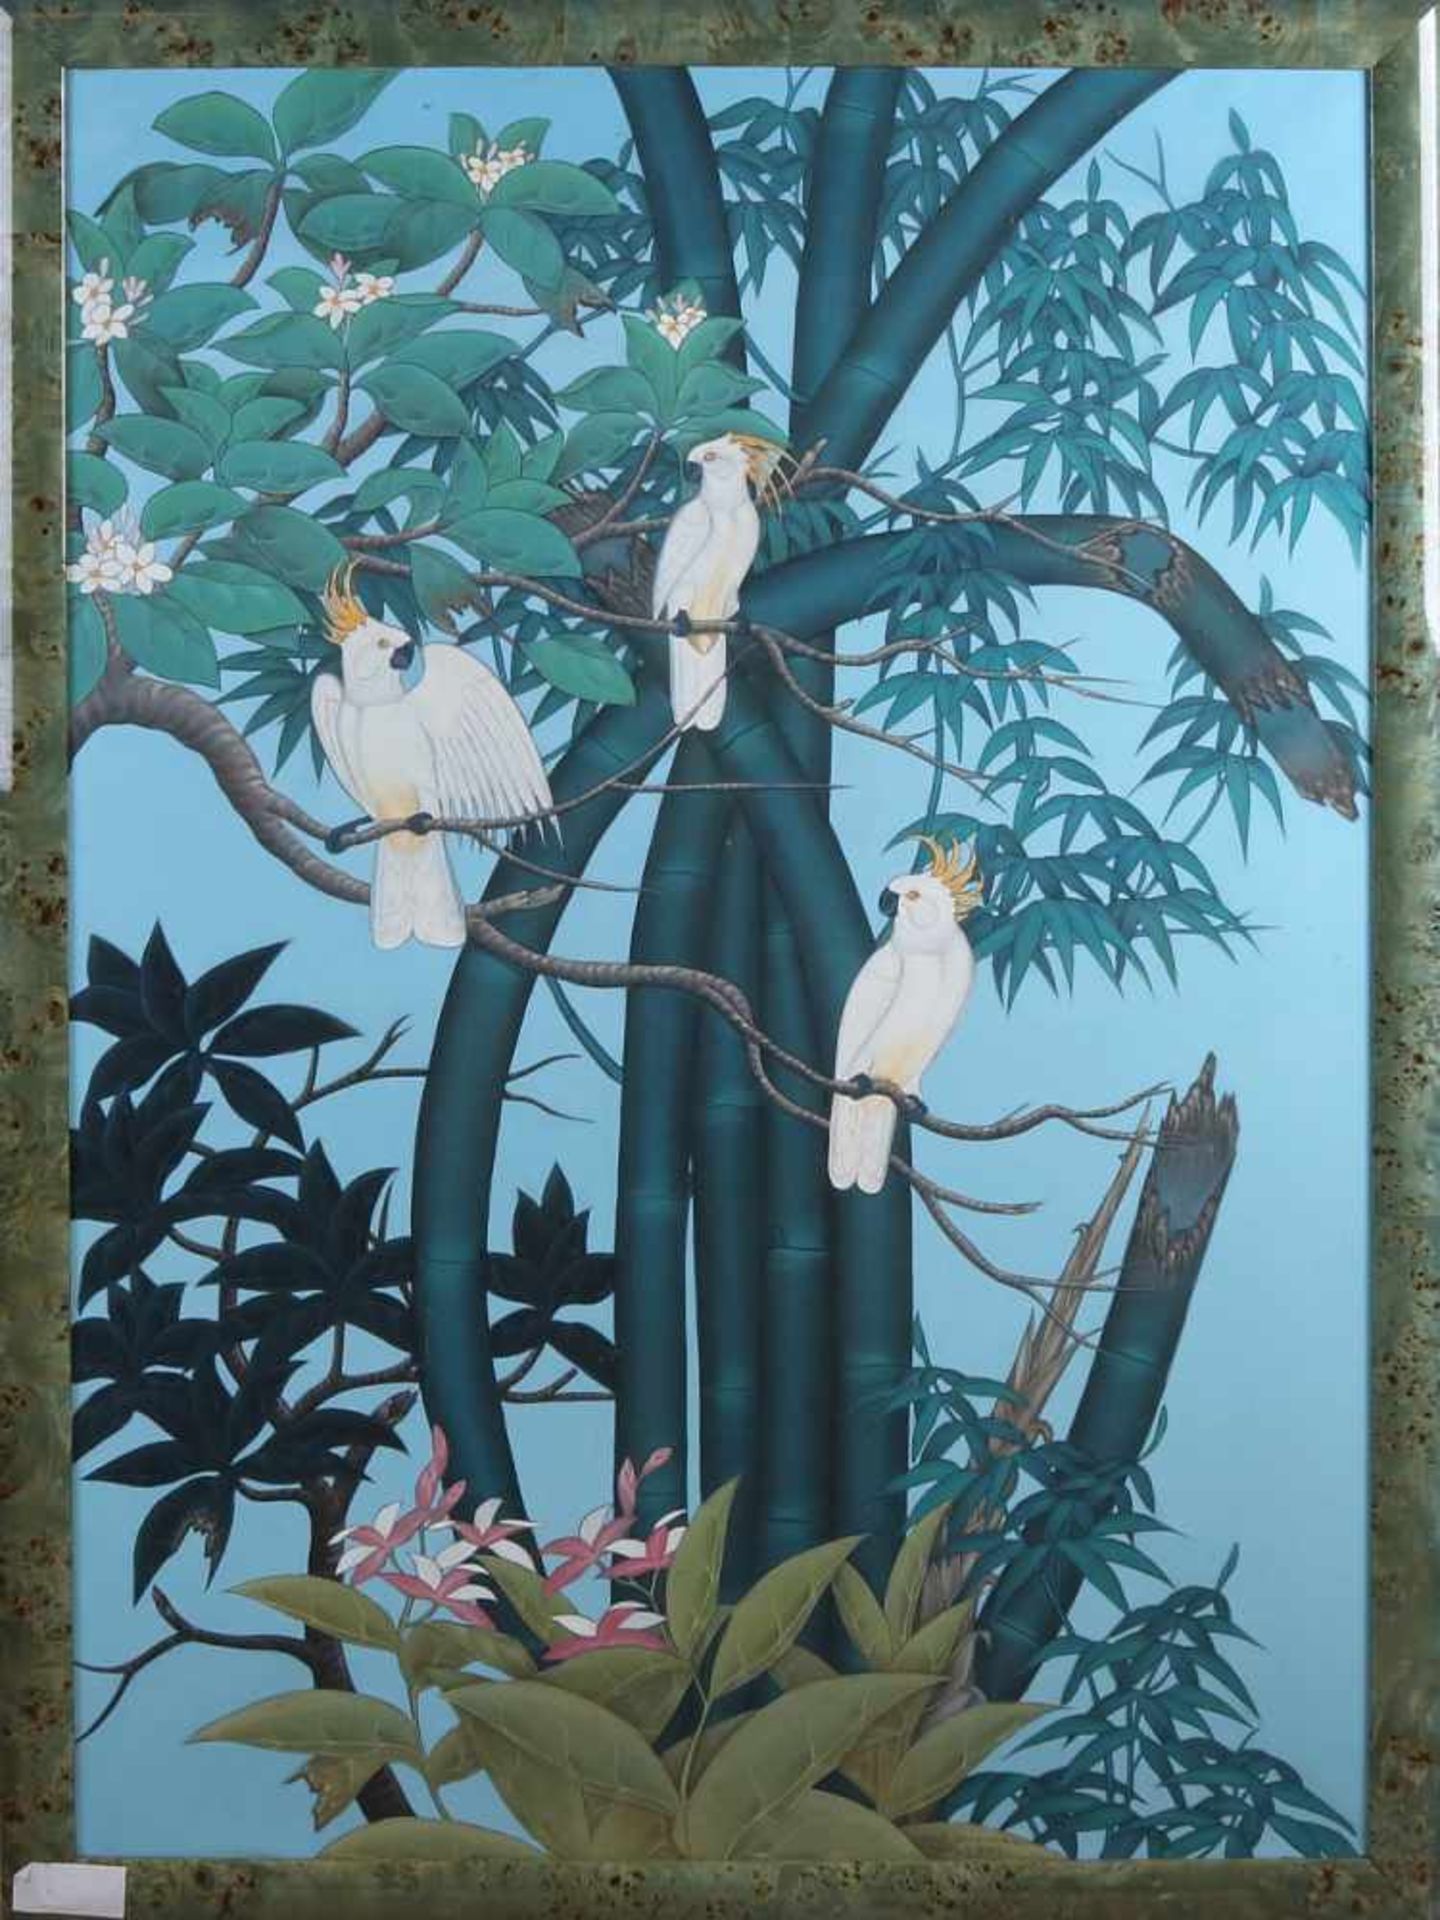 Ketut Danawirawan Bali. Kakadus im blühenden Baum. Batik auf Leinen. Abmessungen: H 120 x B 85 cm.